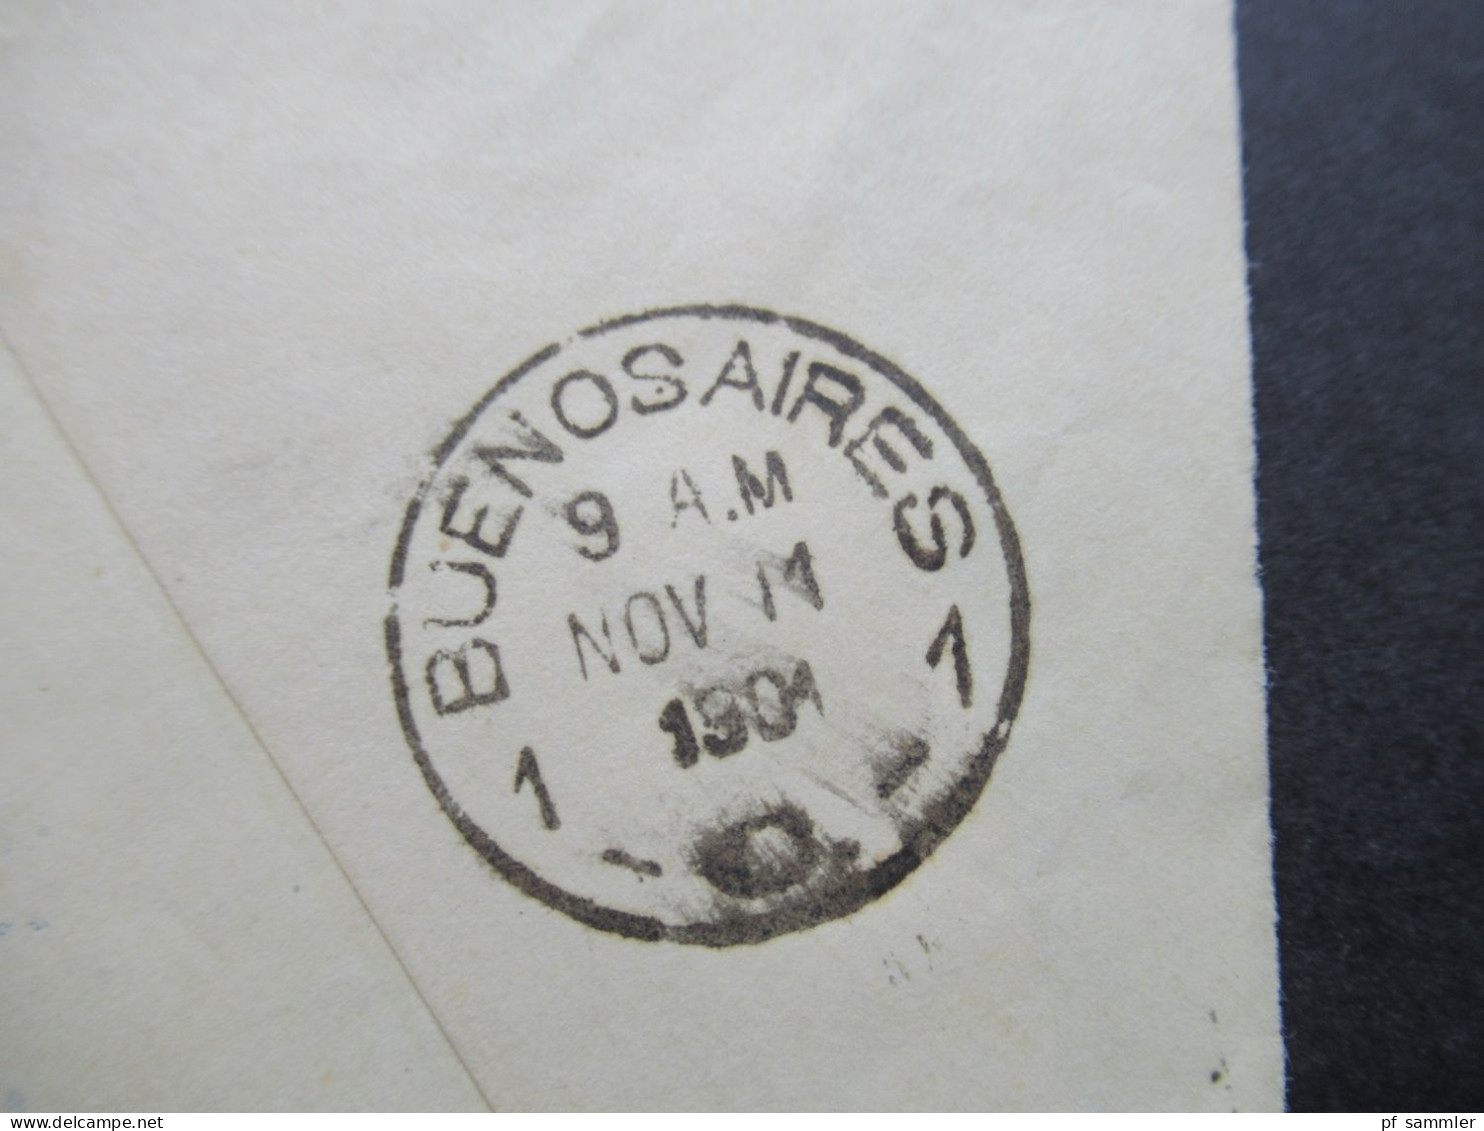 Argentinien 1901 Bedruckter Ganzsachen Umschlag / Senor F. Leinau Bolsa No30 Buenos Aires / Wertstempel Roter Überdruck - Enteros Postales